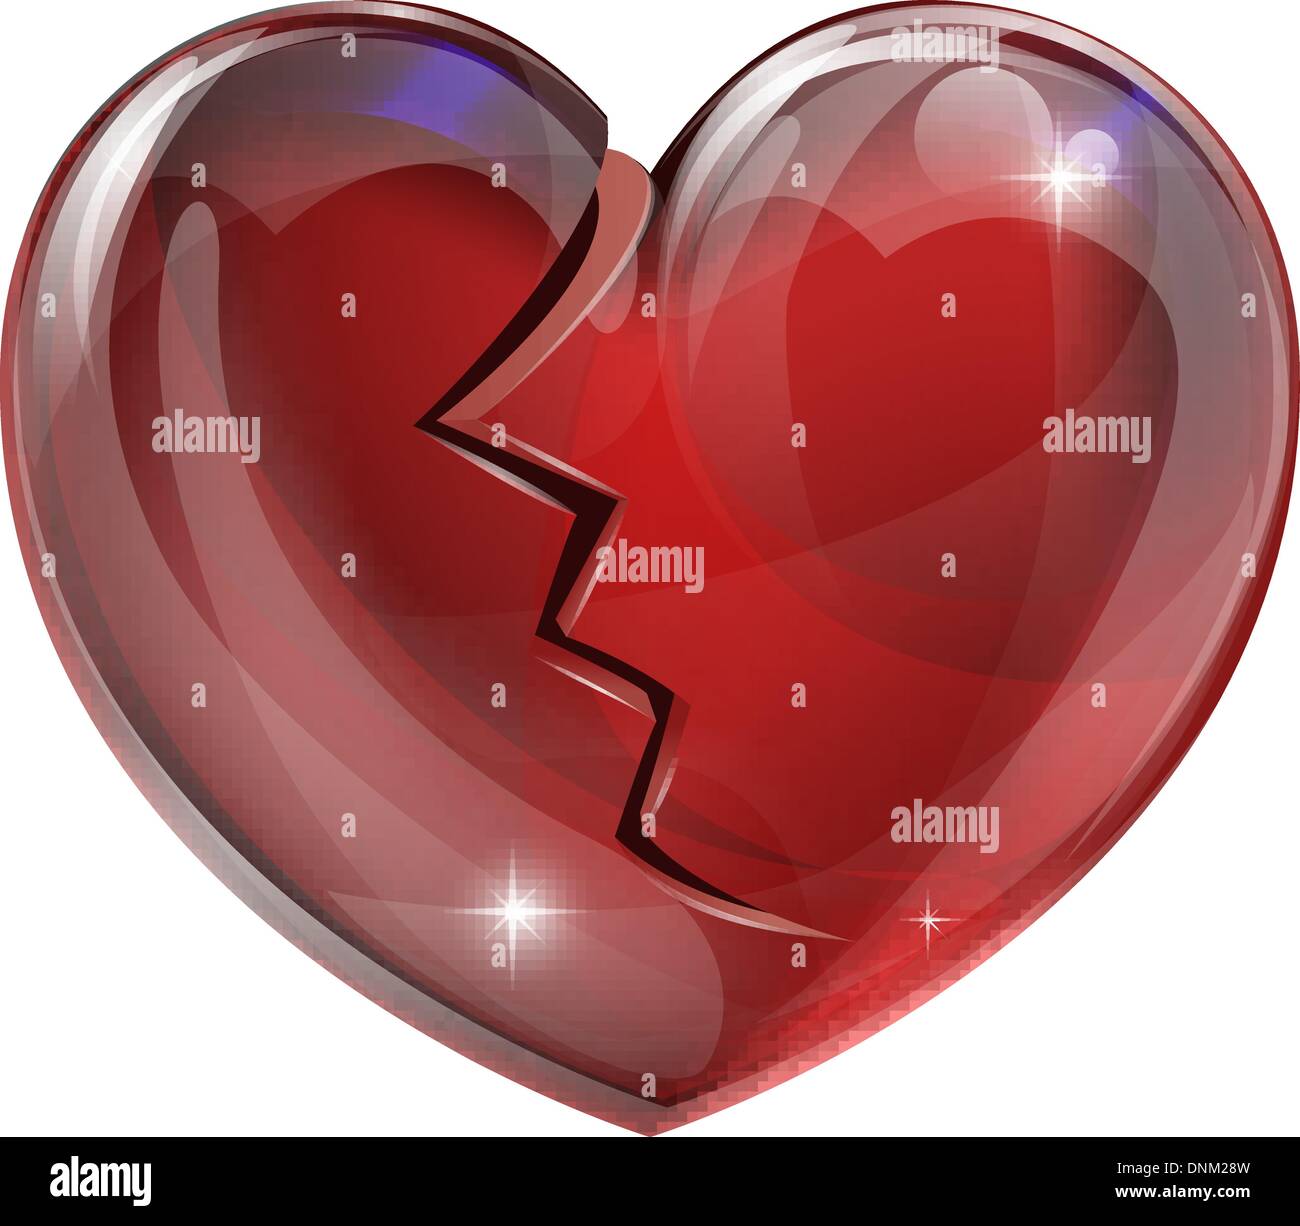 Abbildung eines gebrochenen Herzens mit einem Riss. Konzept für Herz-Kreislauferkrankungen oder Probleme, mit gebrochenem Herzen, Hinterbliebenen oder Pech in der lo Stock Vektor